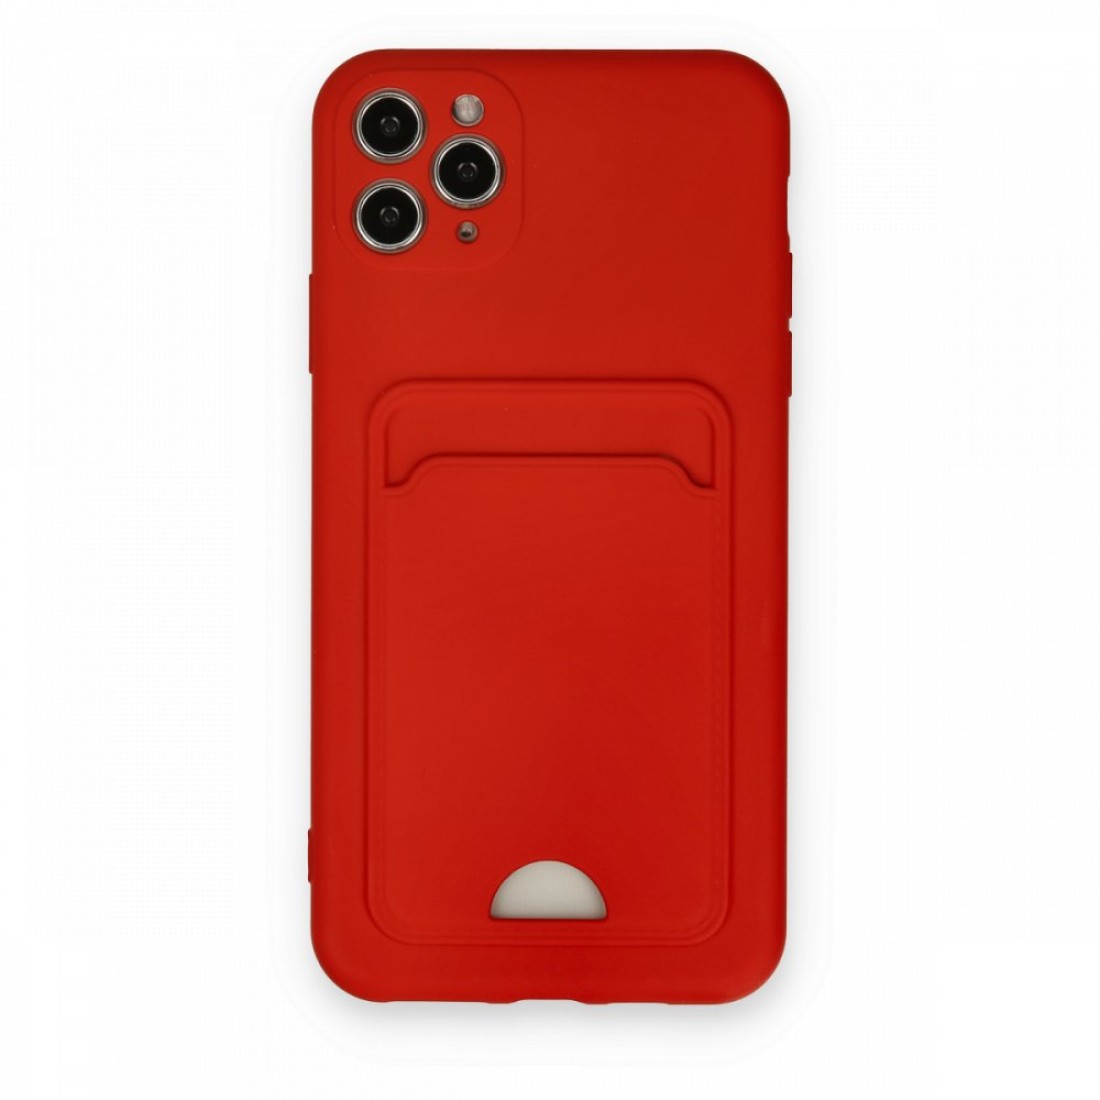 Apple iPhone 11 Pro Max Kılıf Kelvin Kartvizitli Silikon - Kırmızı